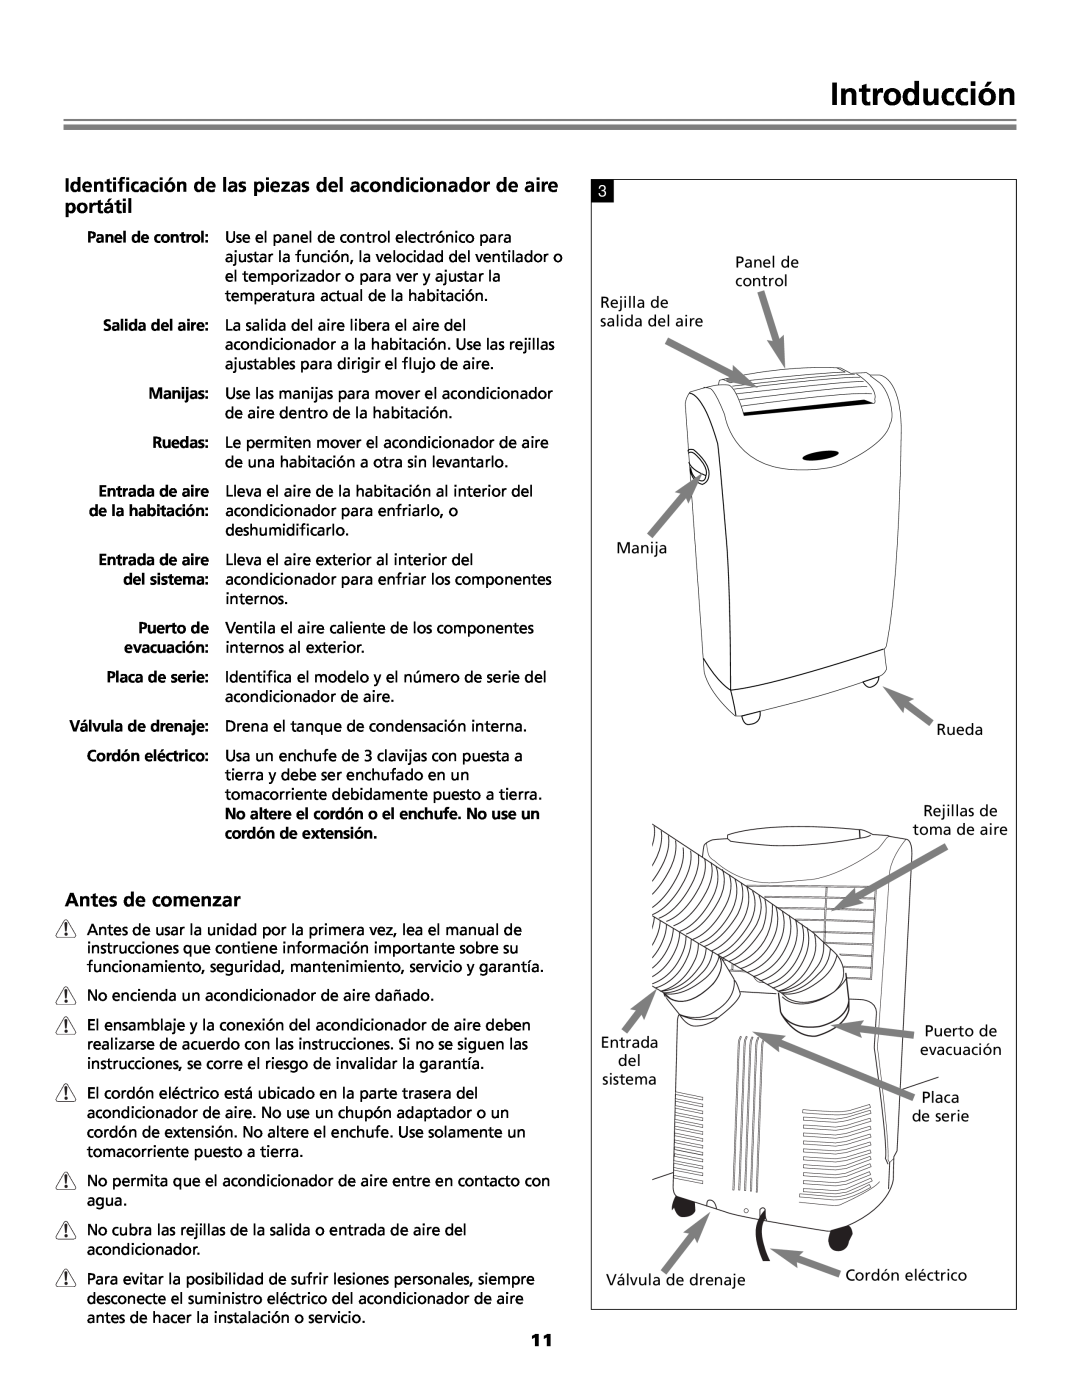 Fedders Portable Dehumidifier important safety instructions Introducción, portátil, Antes de comenzar 